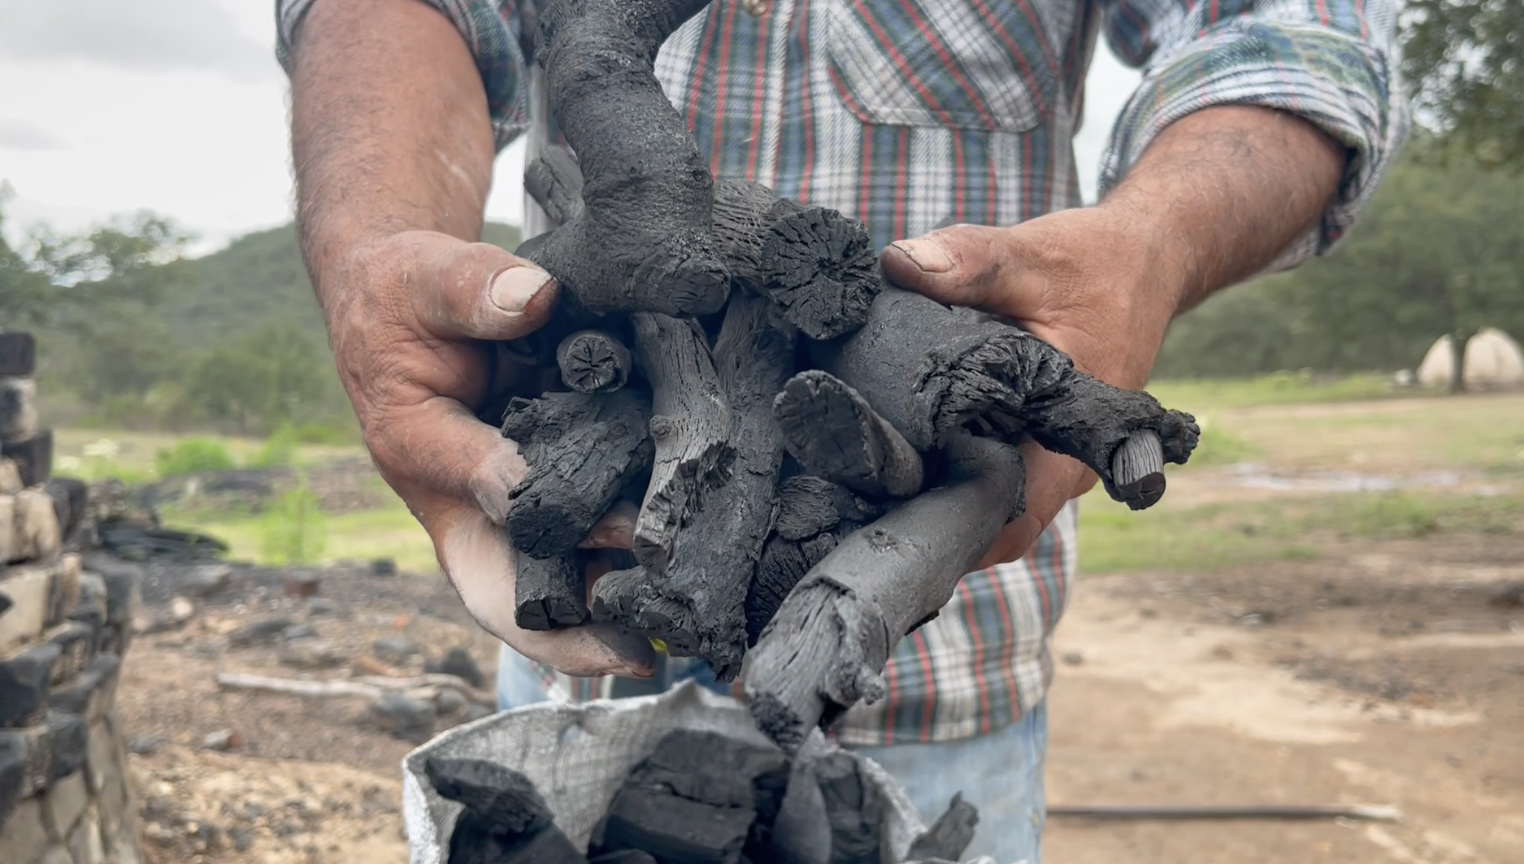 Pie de foto: La producción de carbón es el principal aprovechamiento del ejido. Crédito de foto: Evlyn.Online